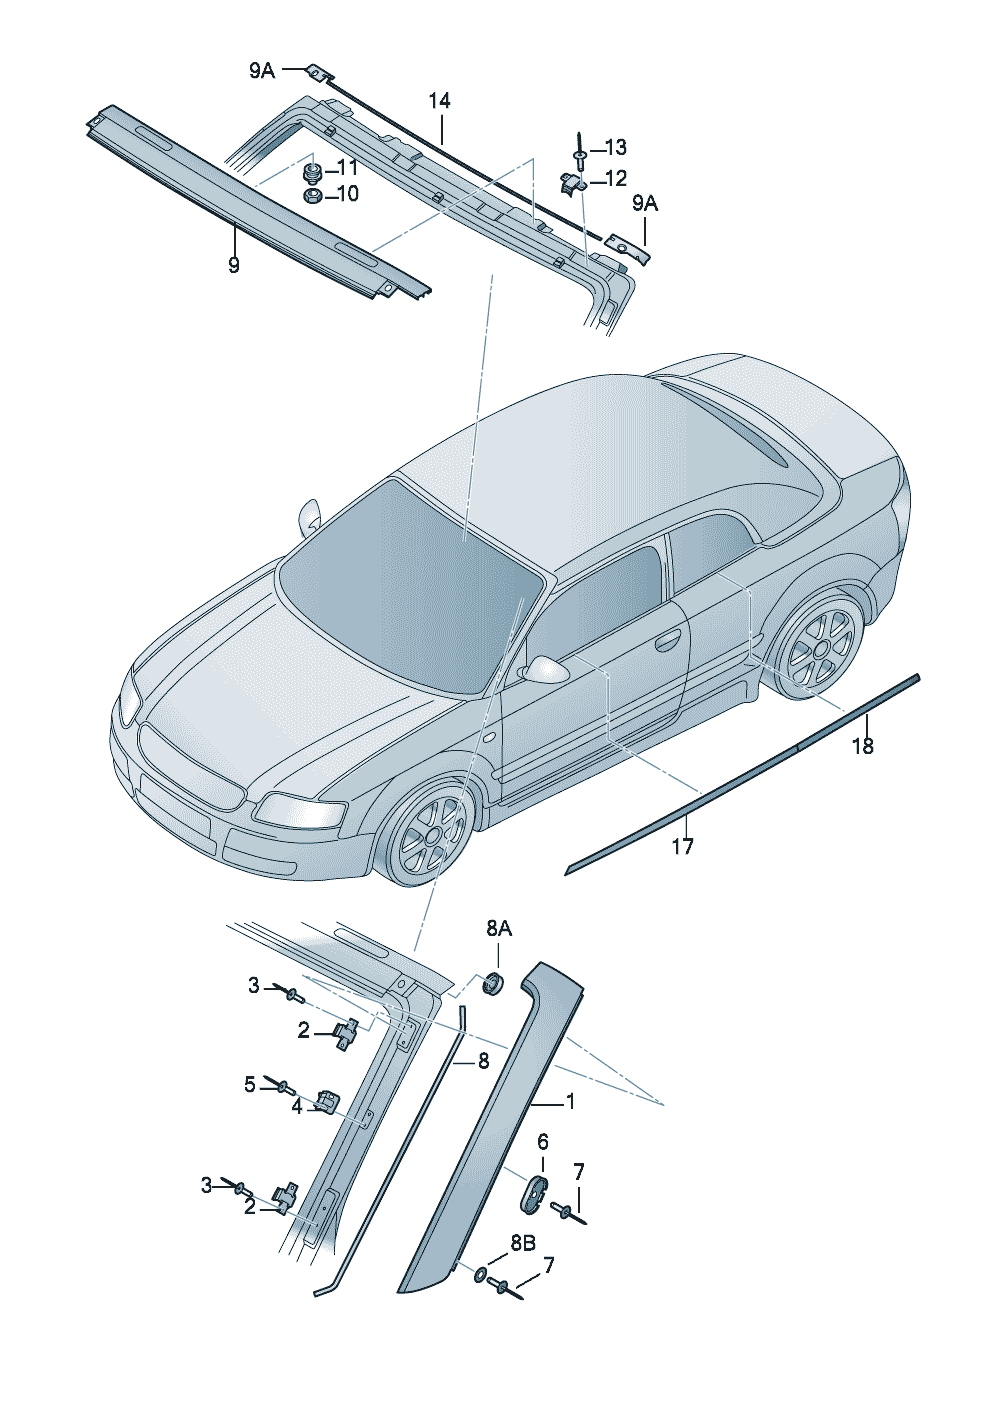 Blenden für SäulenZierleiste für Front-<br>scheibeZierleiste für Fensterschacht  - Audi A4/S4 Cabrio./qu. - aa4c